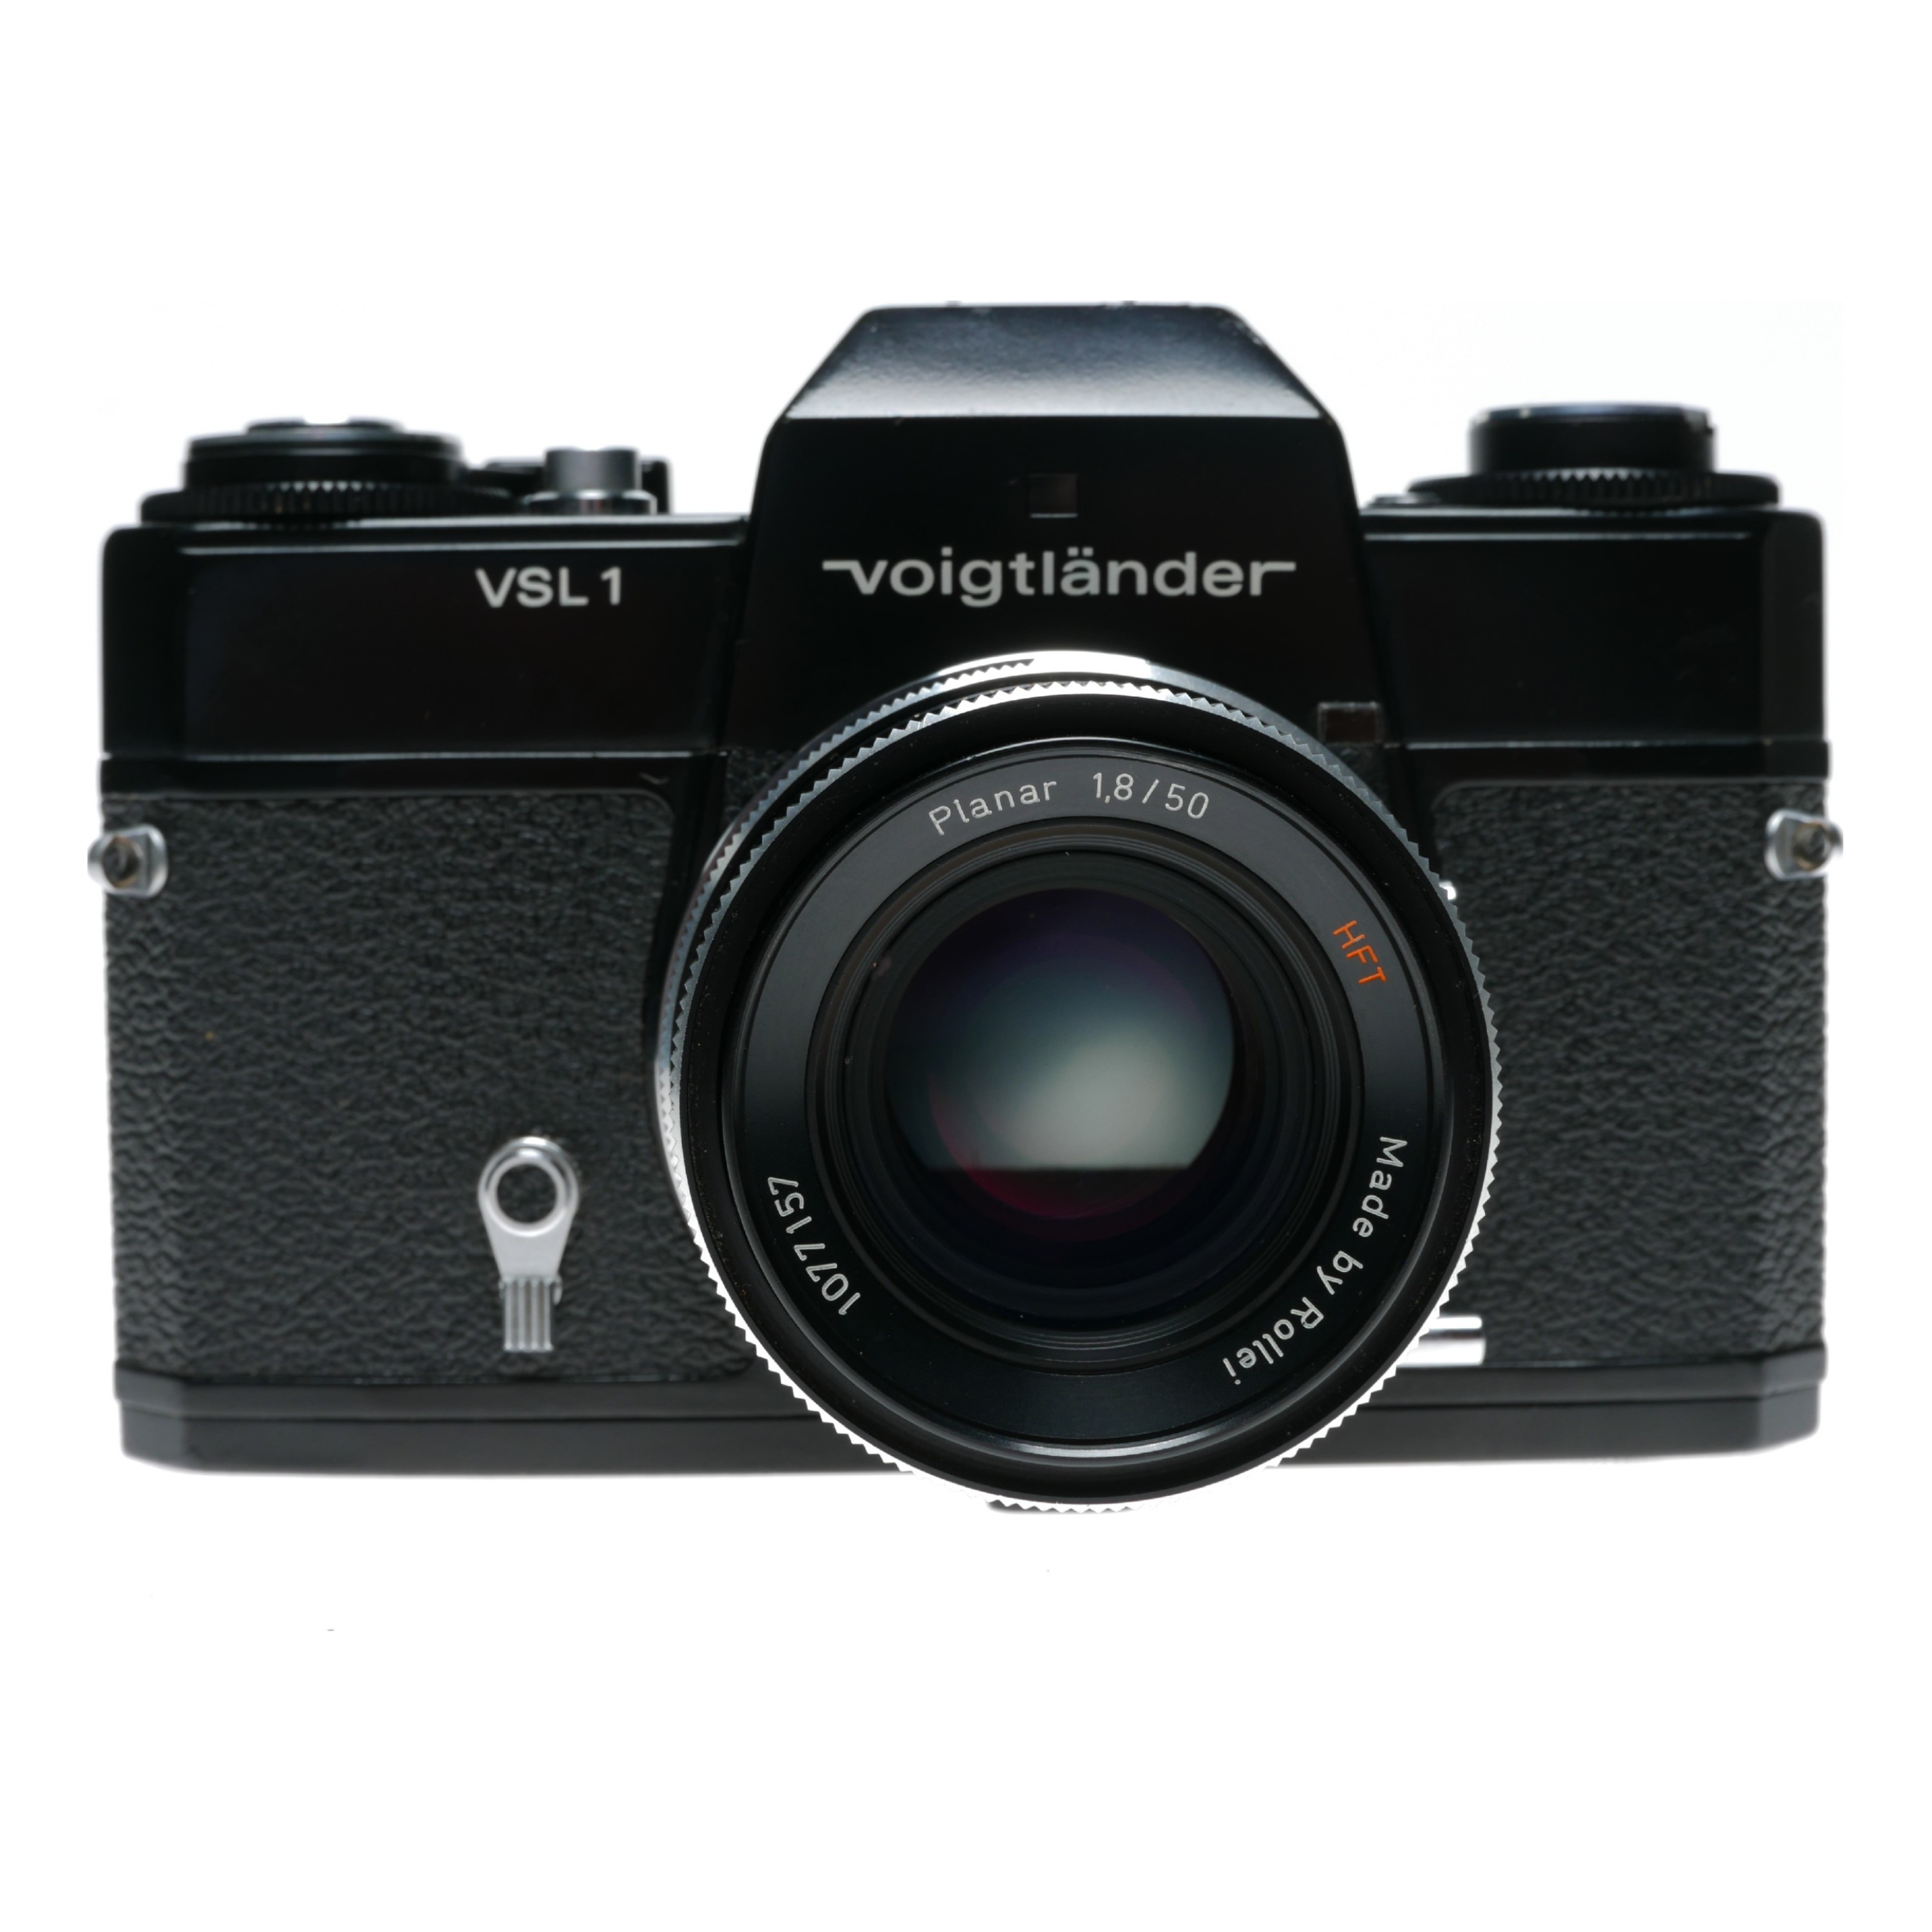 Voigtlander VSL 1 35mm Film SLR Camera M42 Rollei Planar 1.8/50 HFT